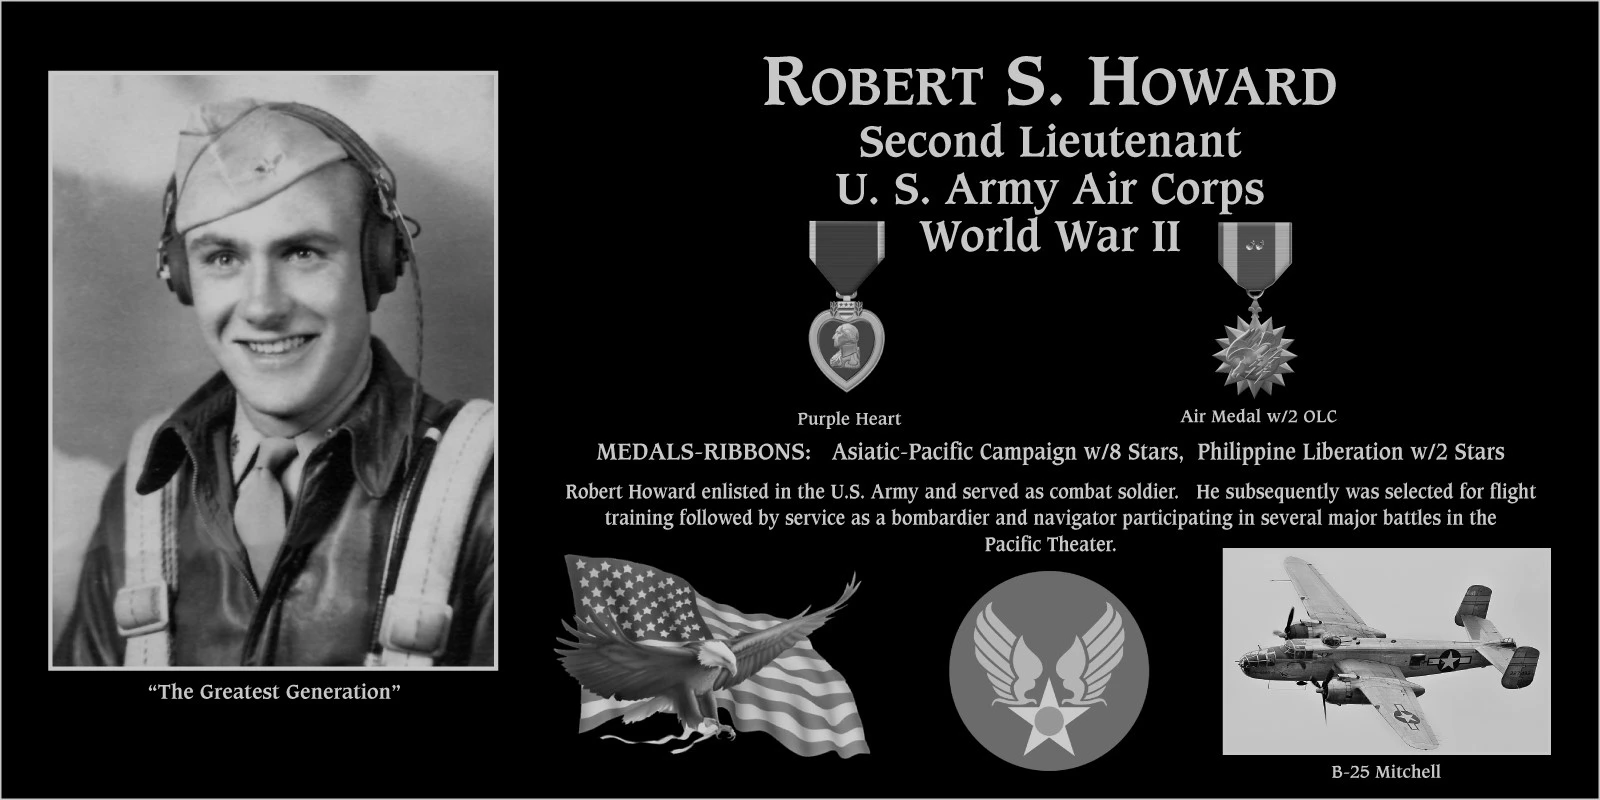 Robert S. Howard